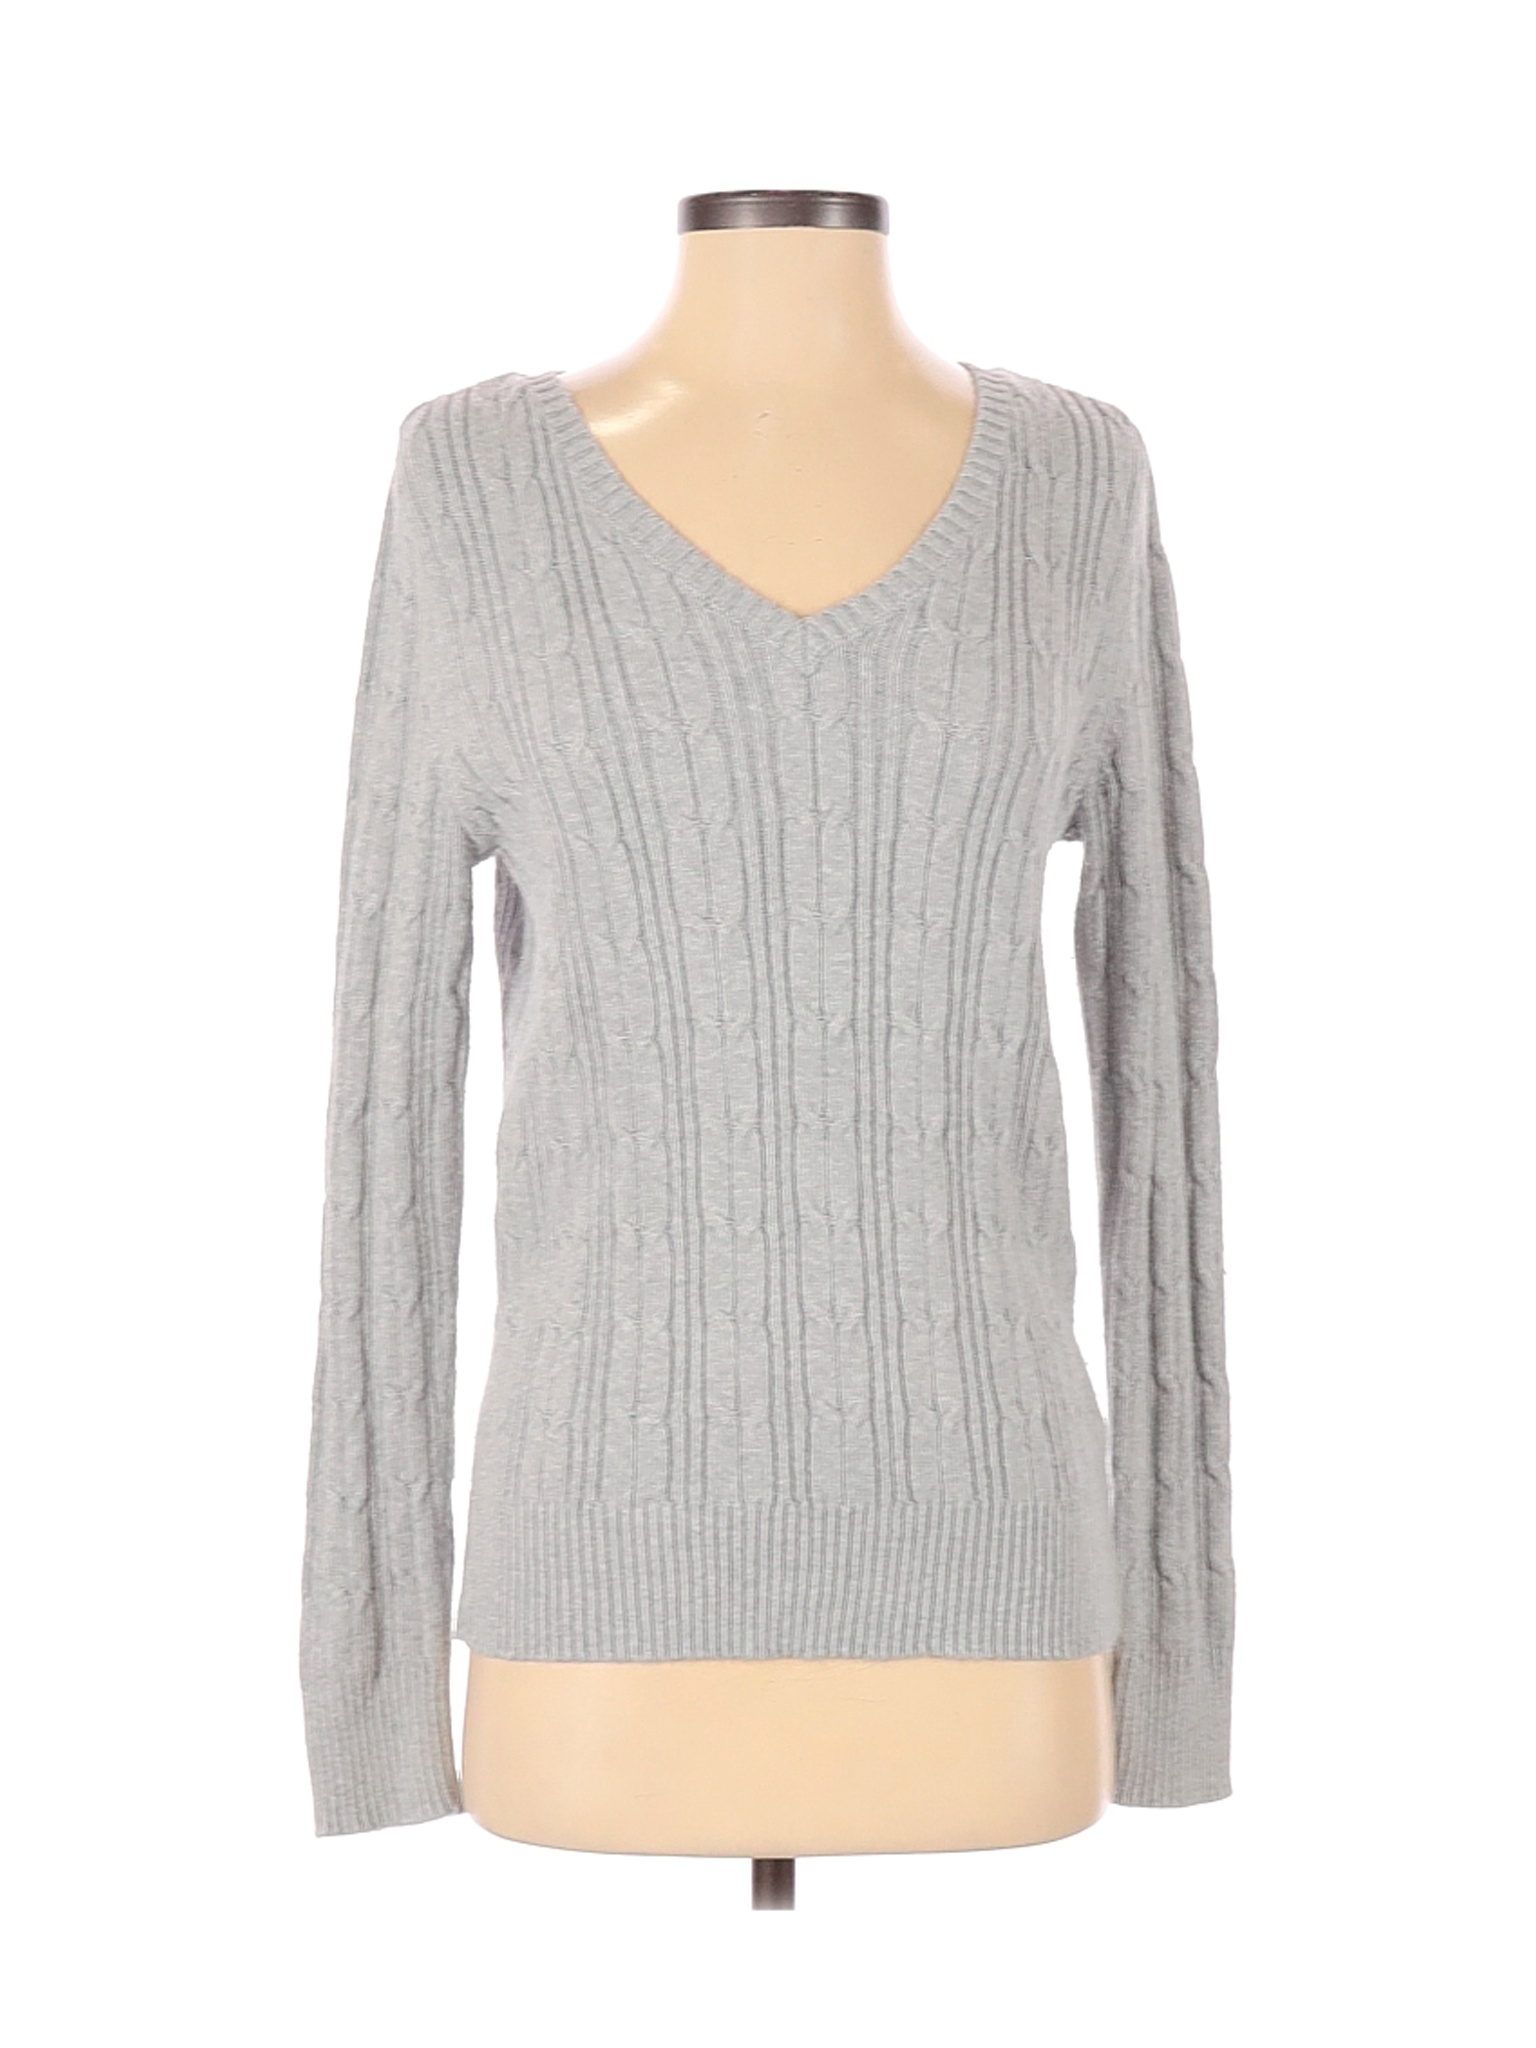 St. John's Bay Women Gray Pullover Sweater S | eBay